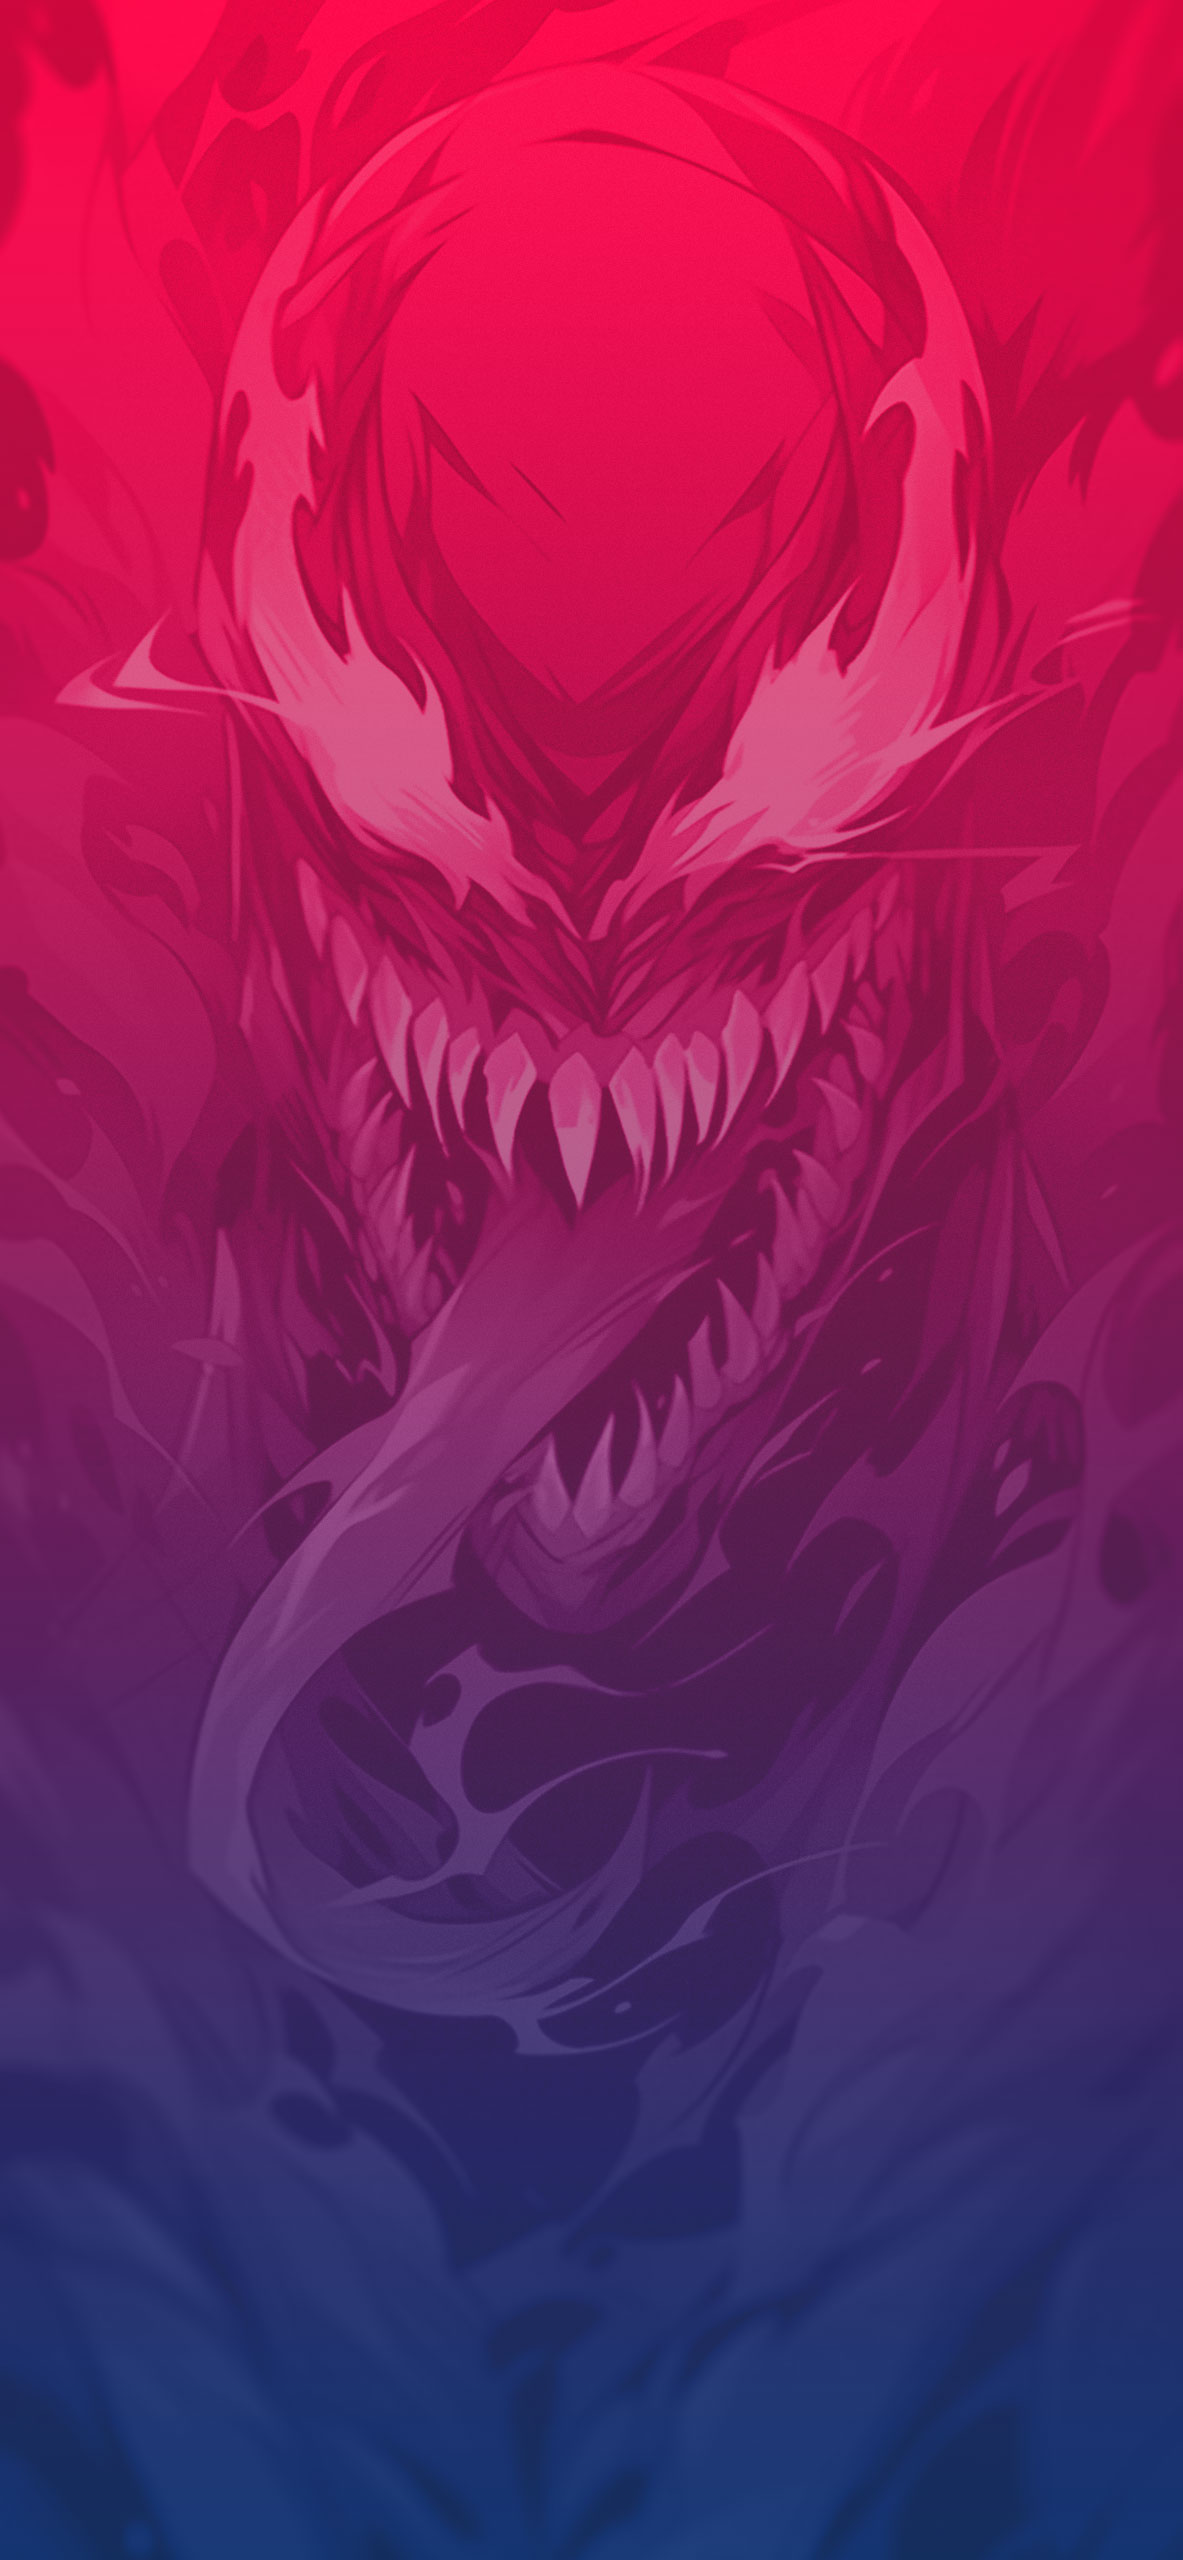 Marvel venom abstract wallpaper Venom art wallpaper for iPhone